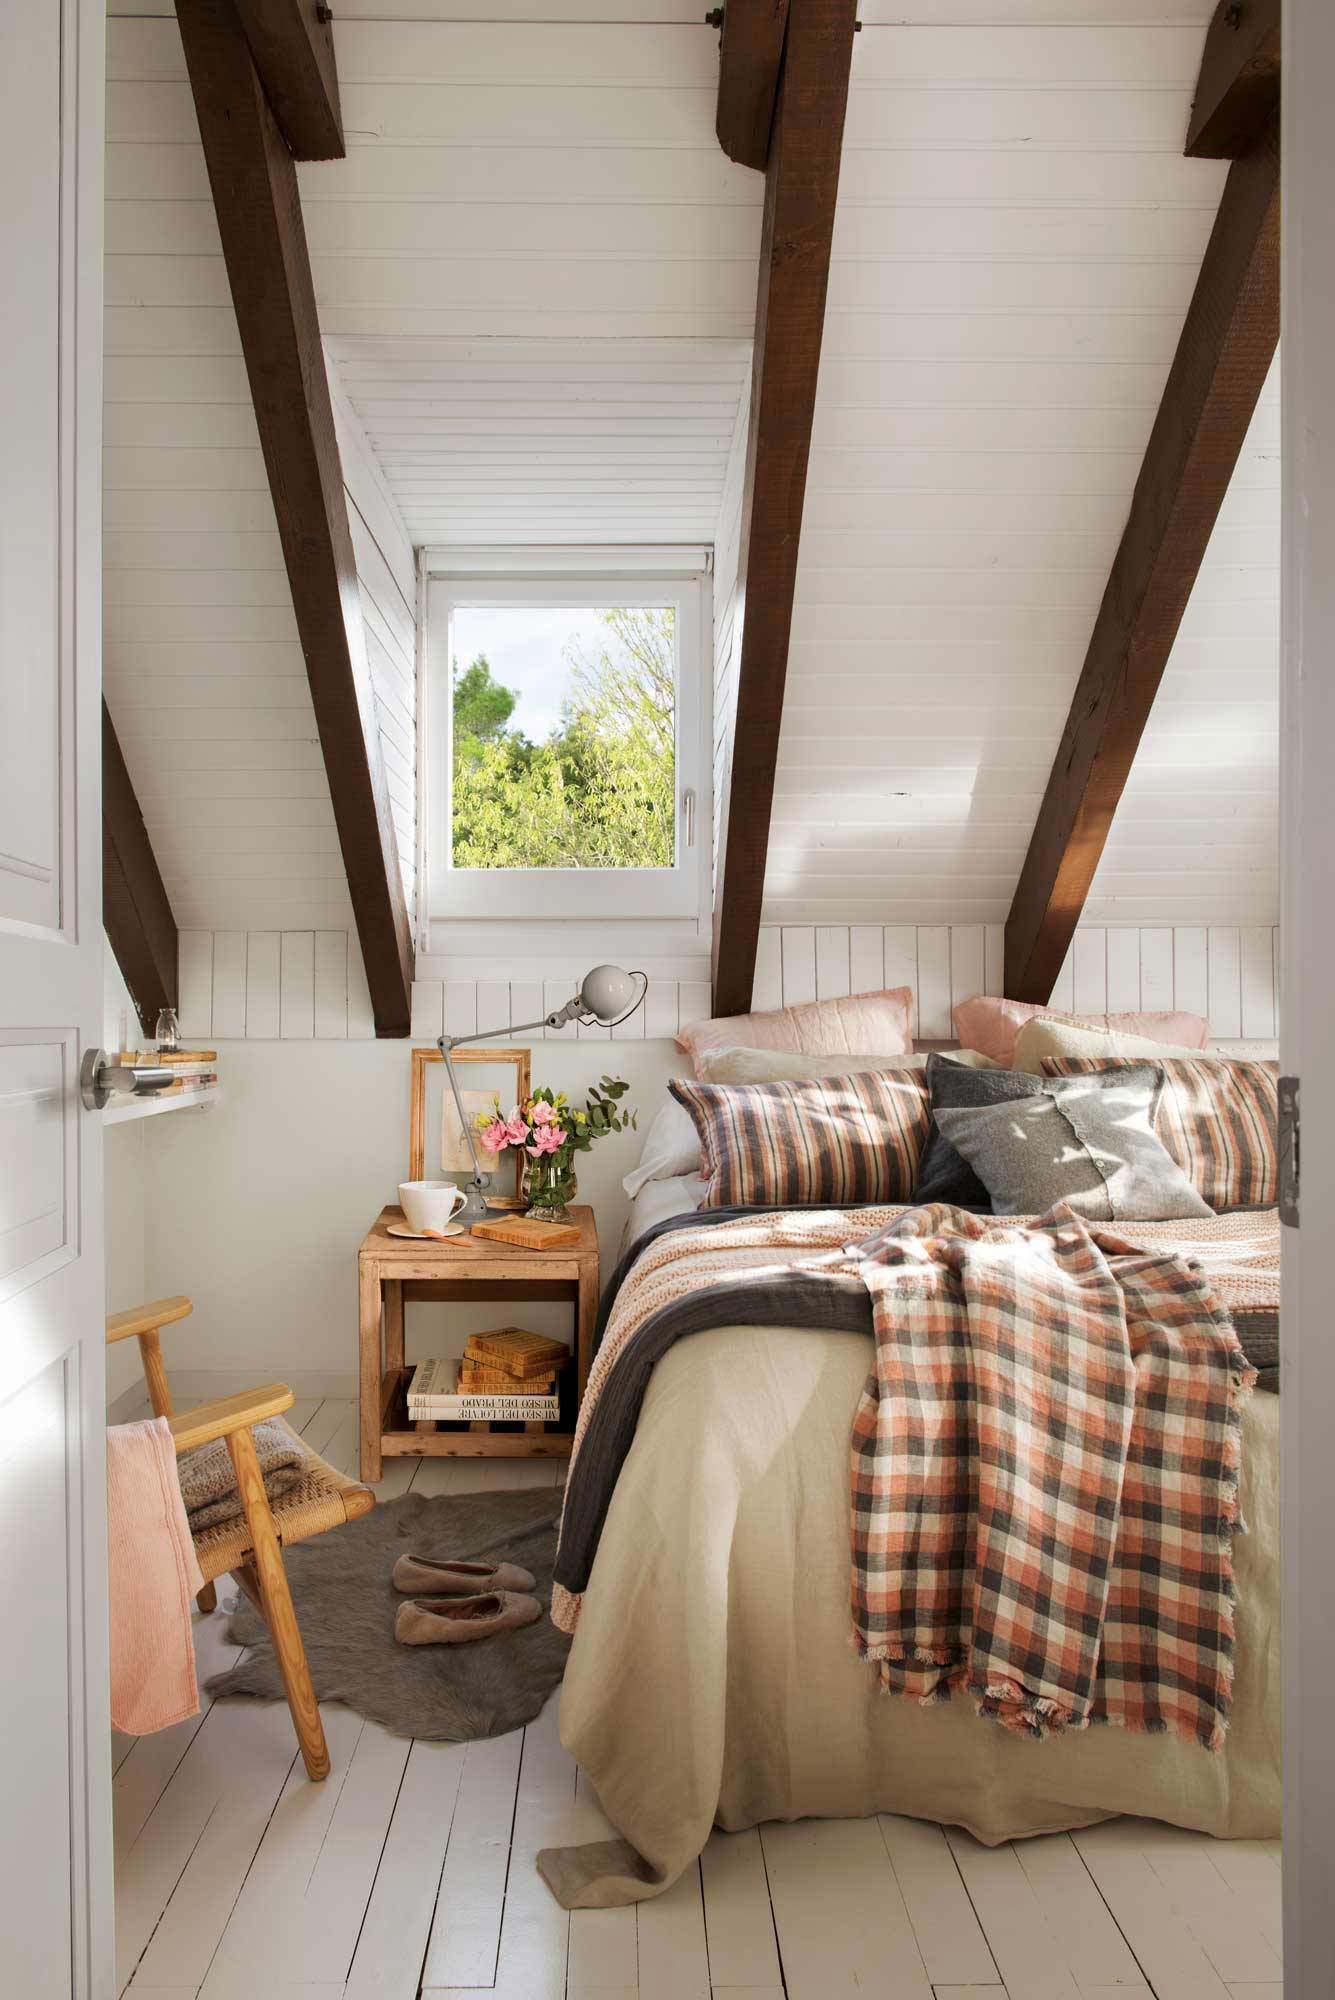 Dormitorio con techo abuhardillado, vigas a la vista y textiles en rosa